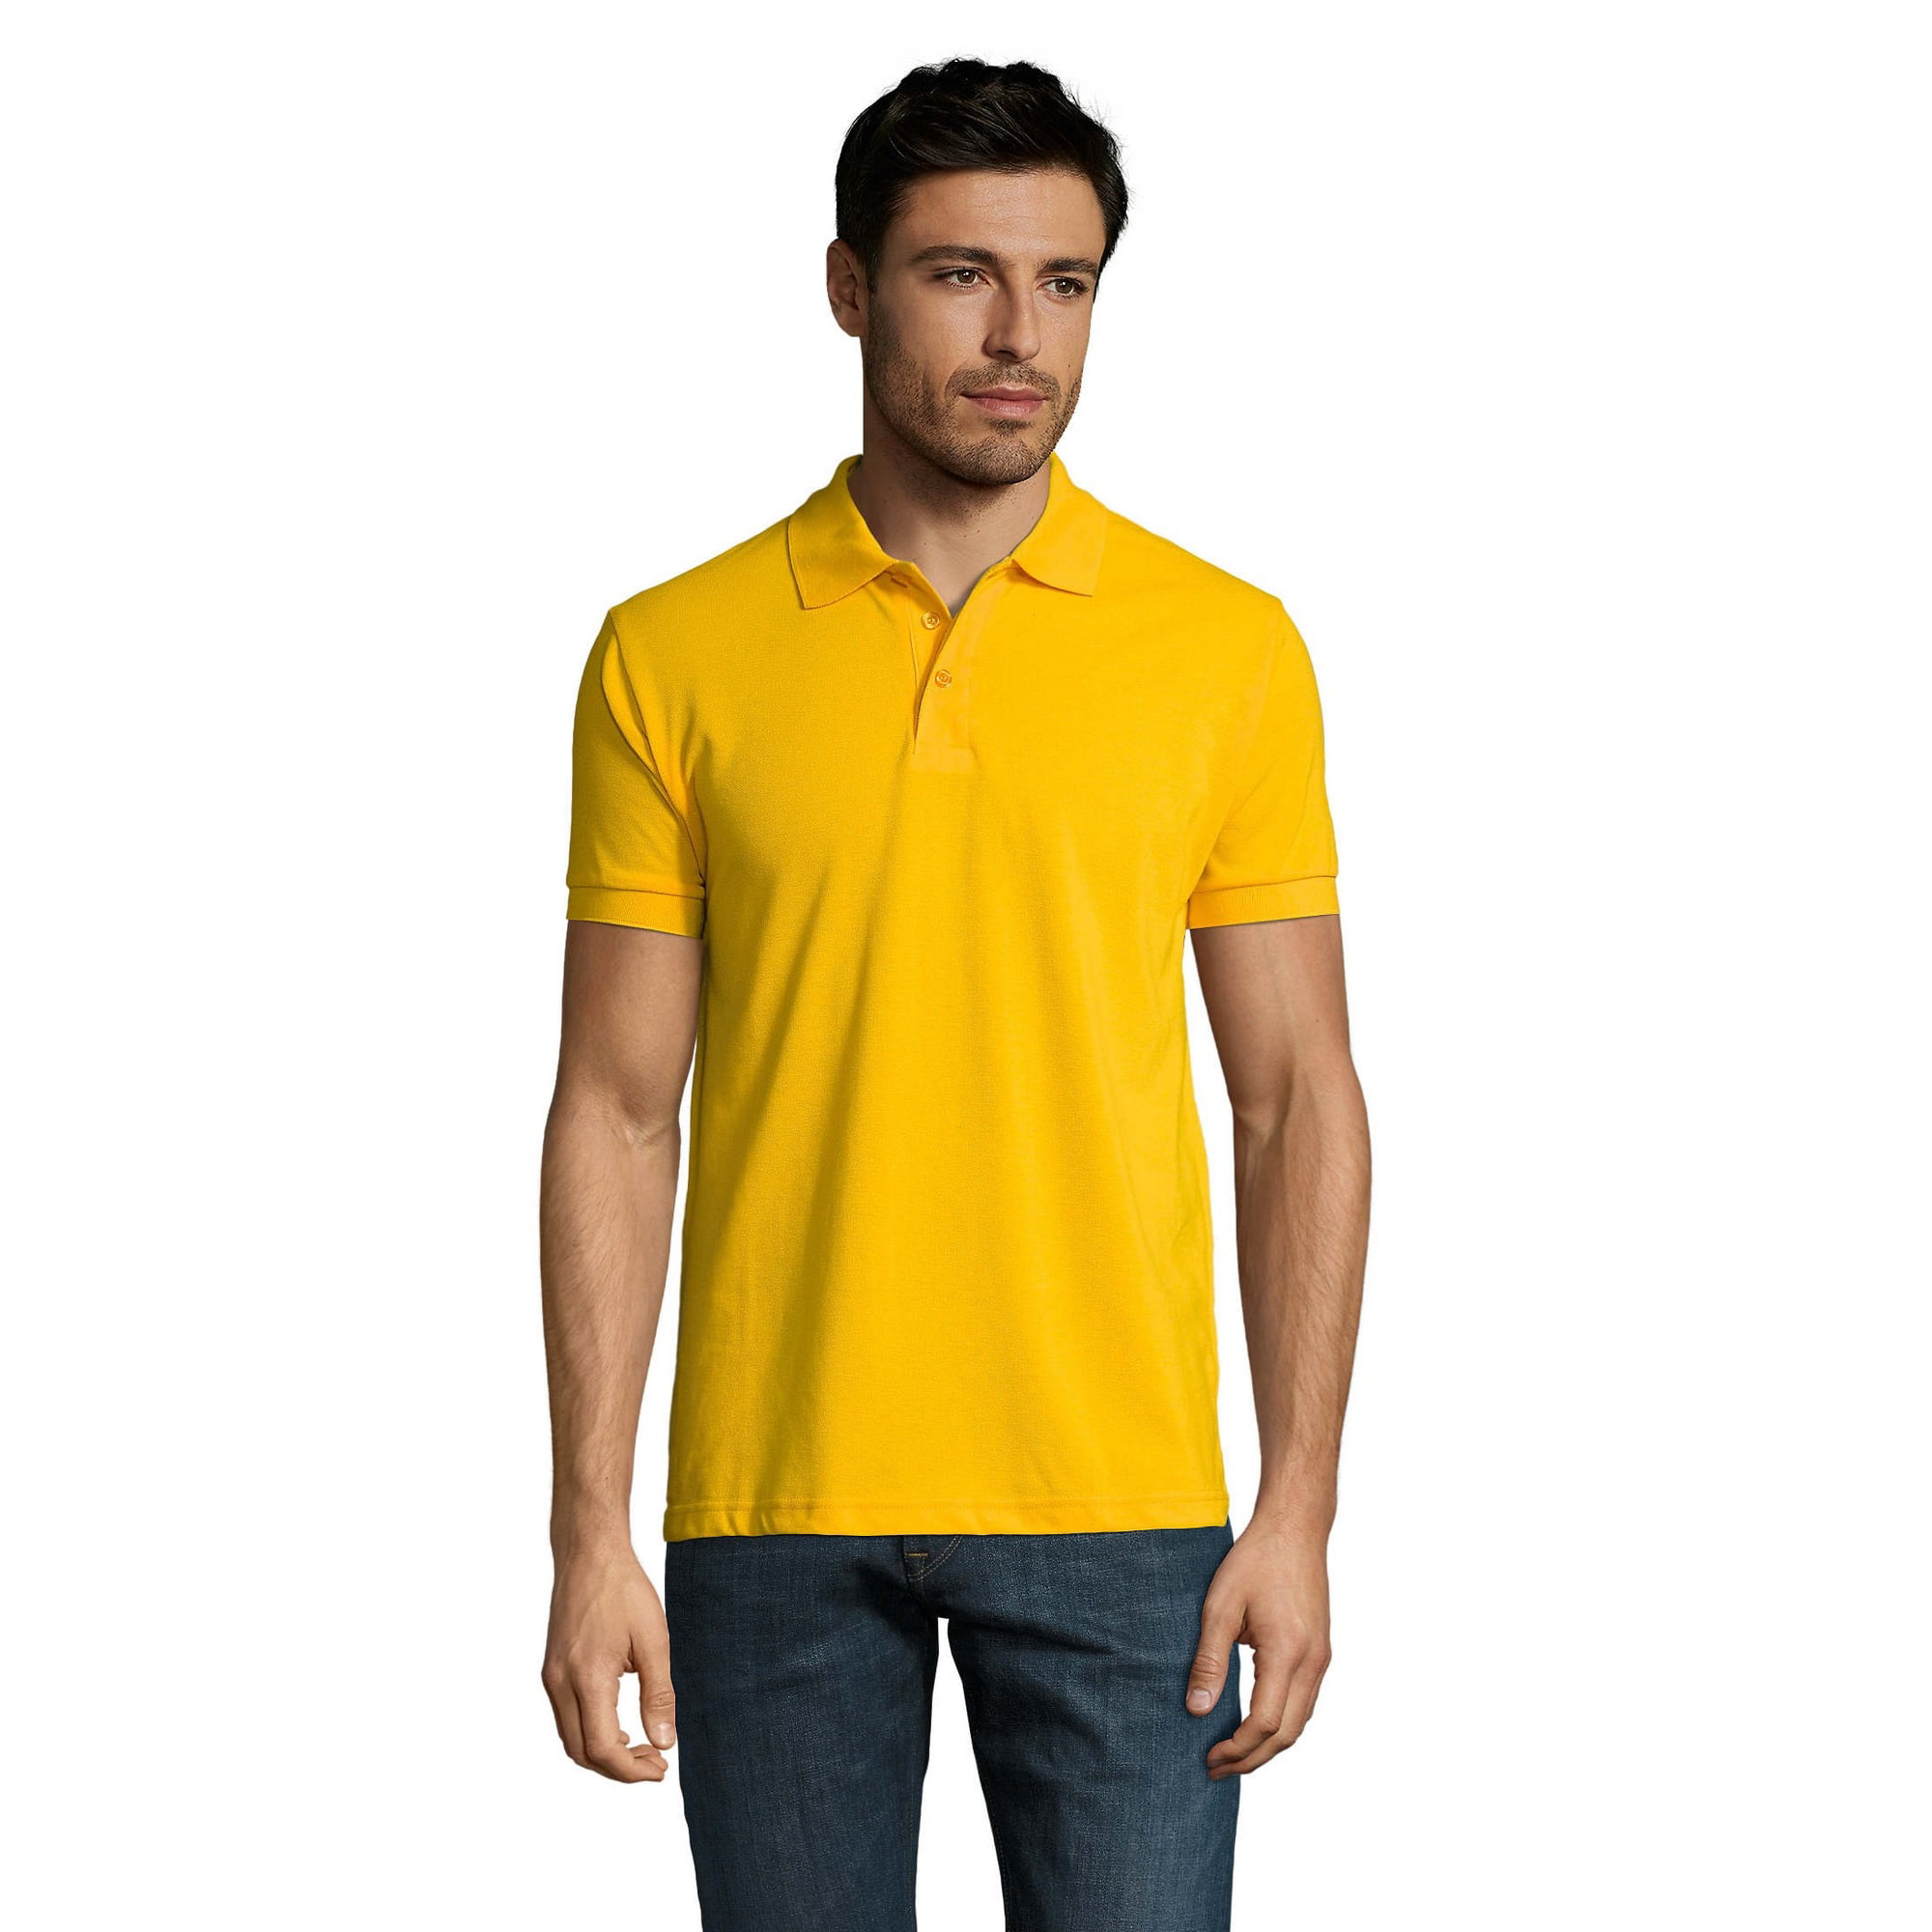 Raad film leeuwerik SOLs Mens Prime Pique Plain Short Sleeve Polo Shirt - Walmart.com